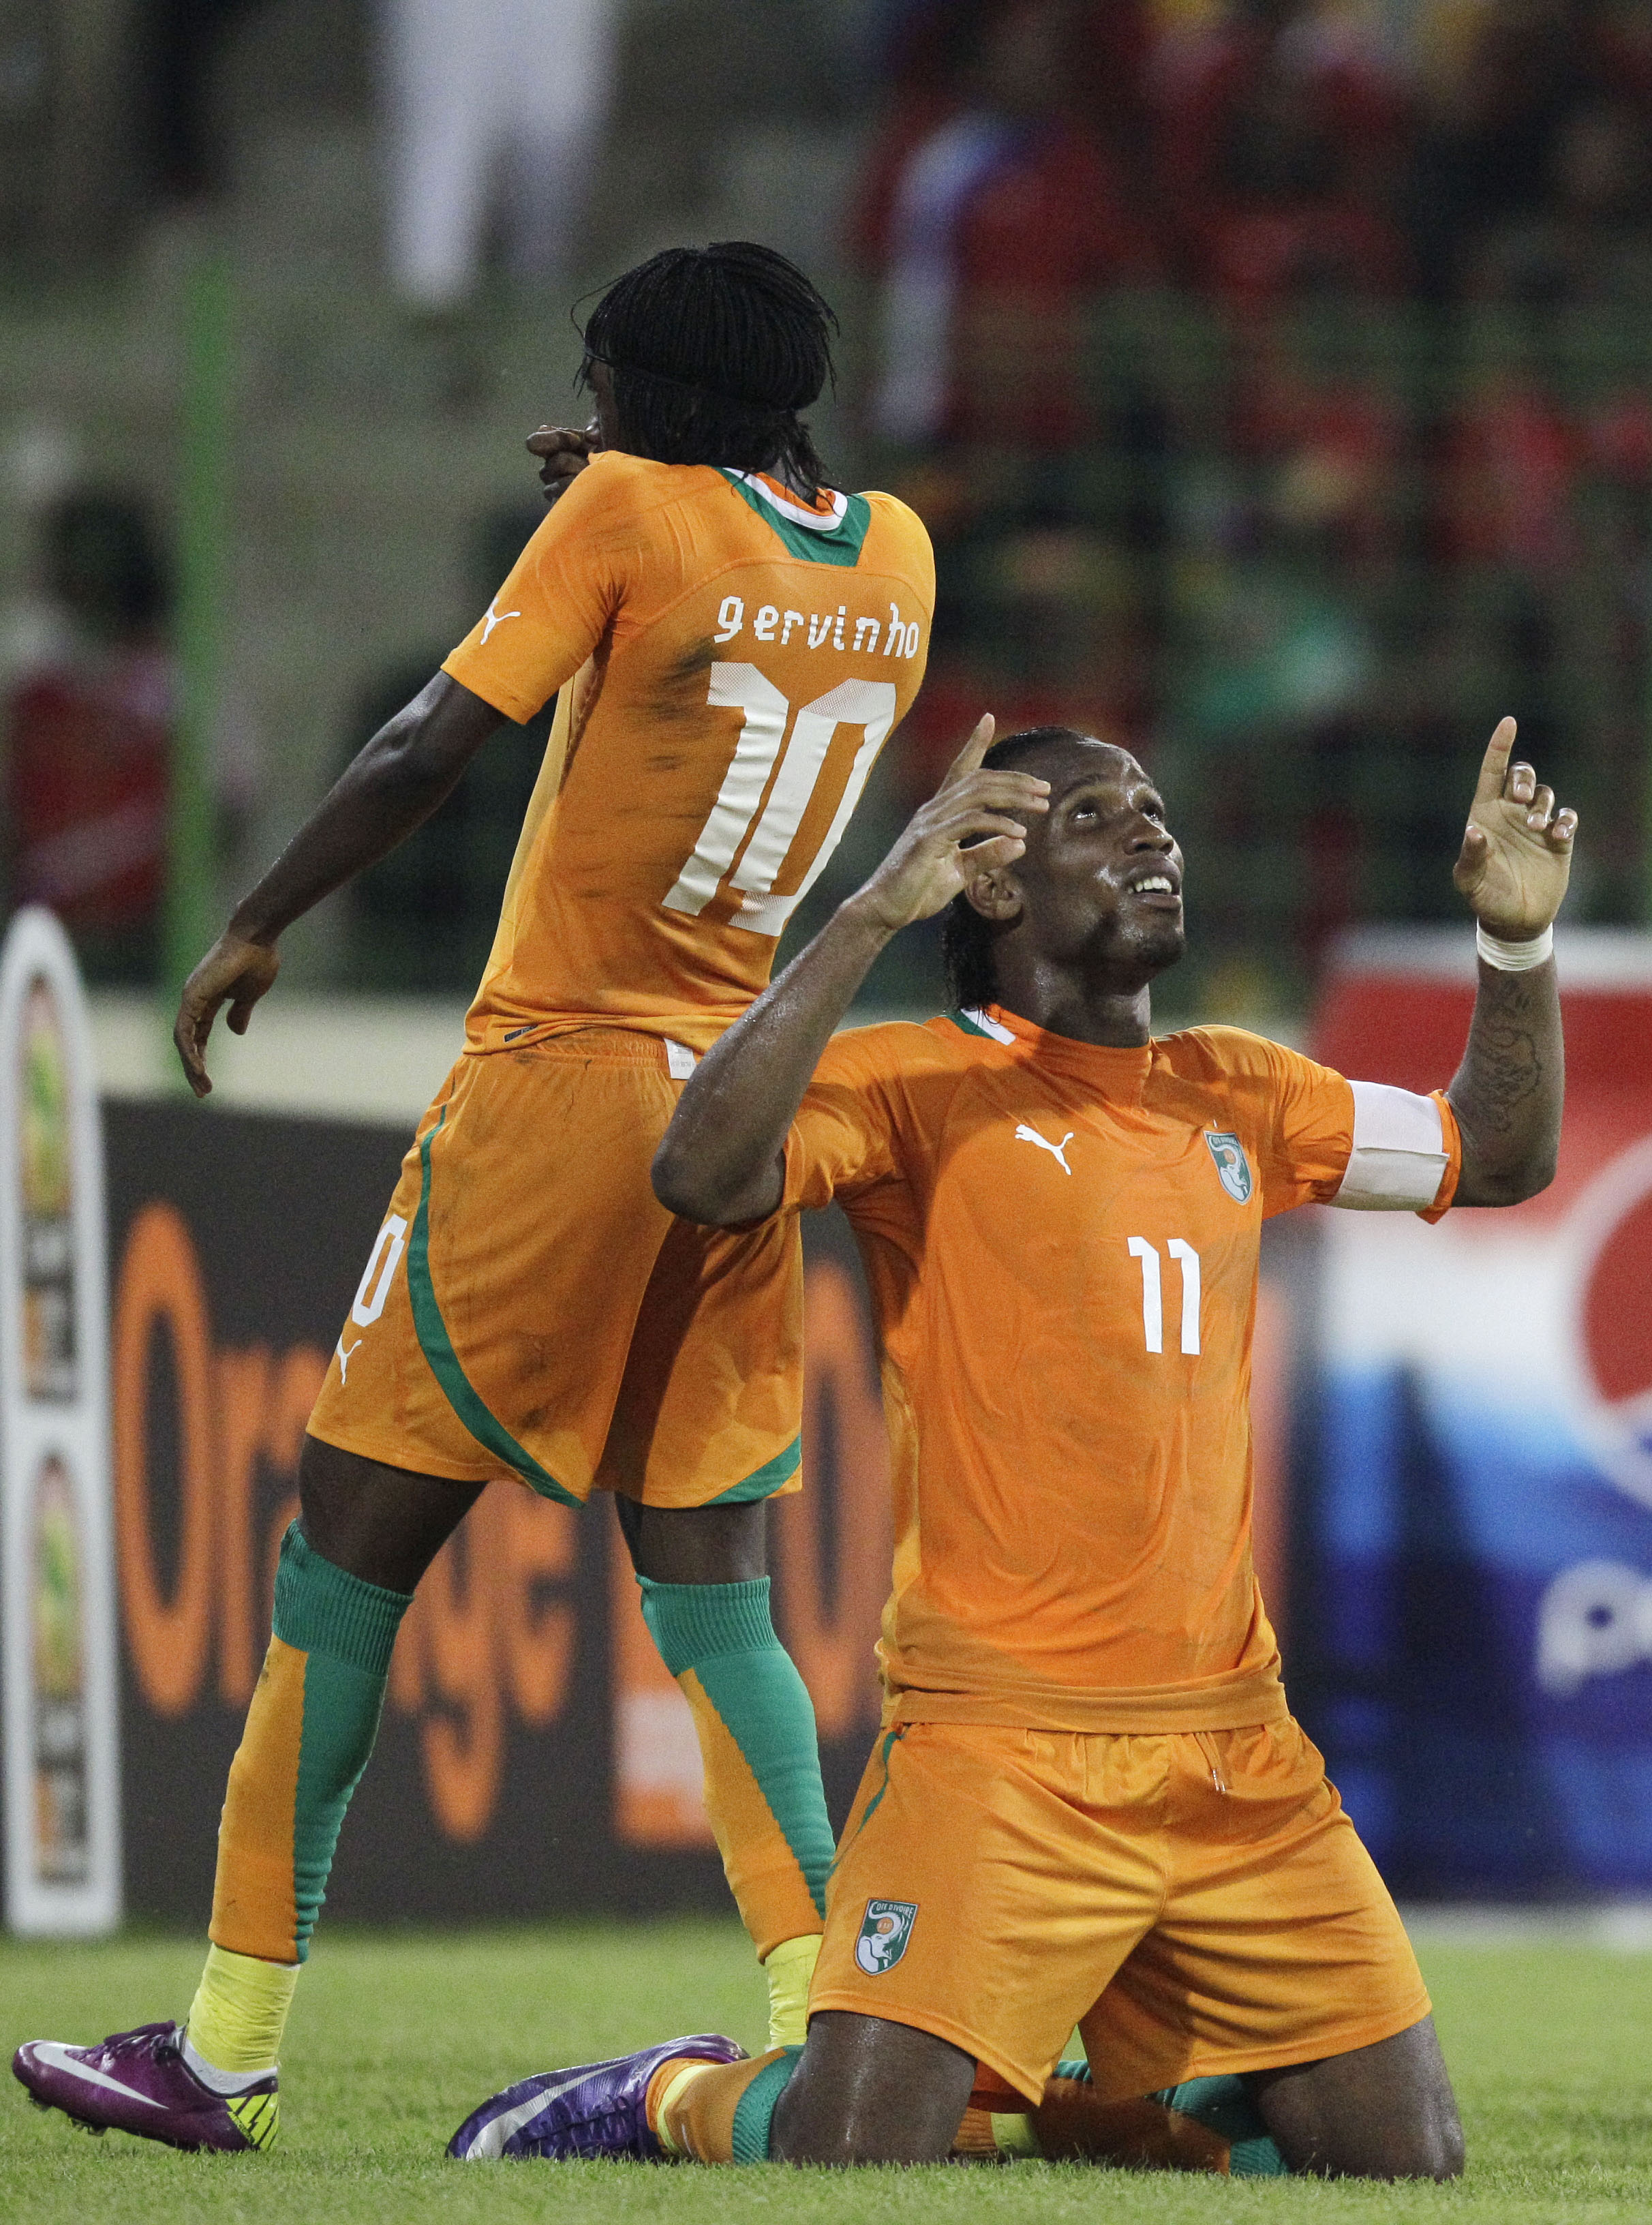 Elfenbenskusten gled enkelt vidare till semifinal. Under onsdagskvällen ställs de mot Mali.